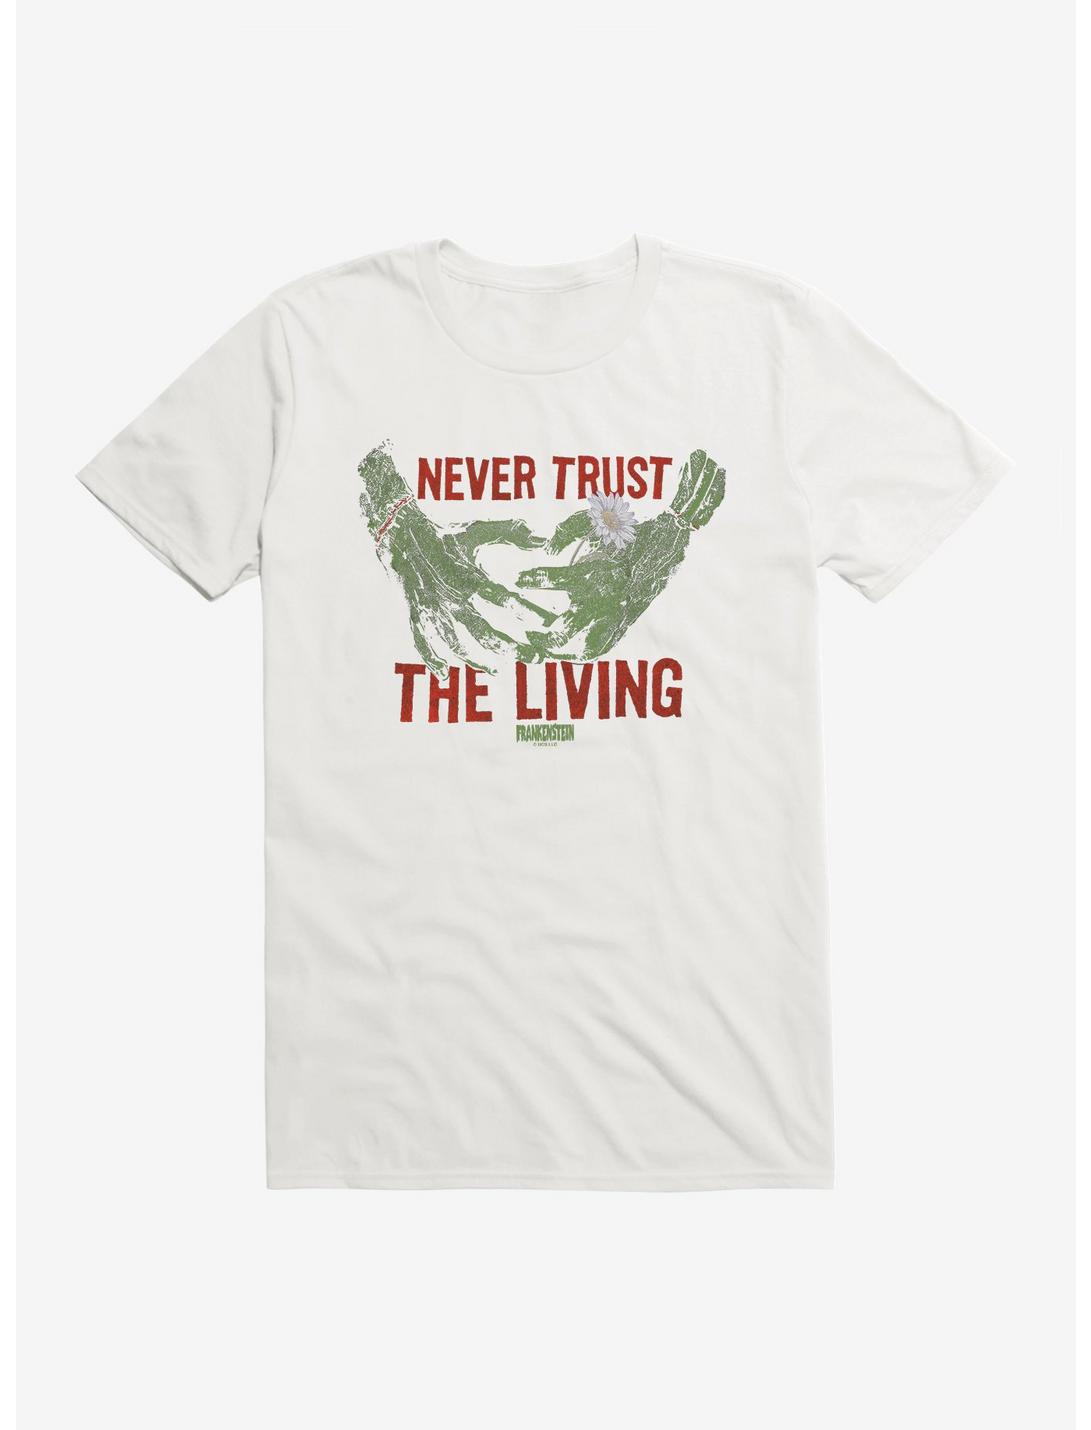 Universal Monsters Frankenstein Never Trust The Living T-Shirt, , hi-res